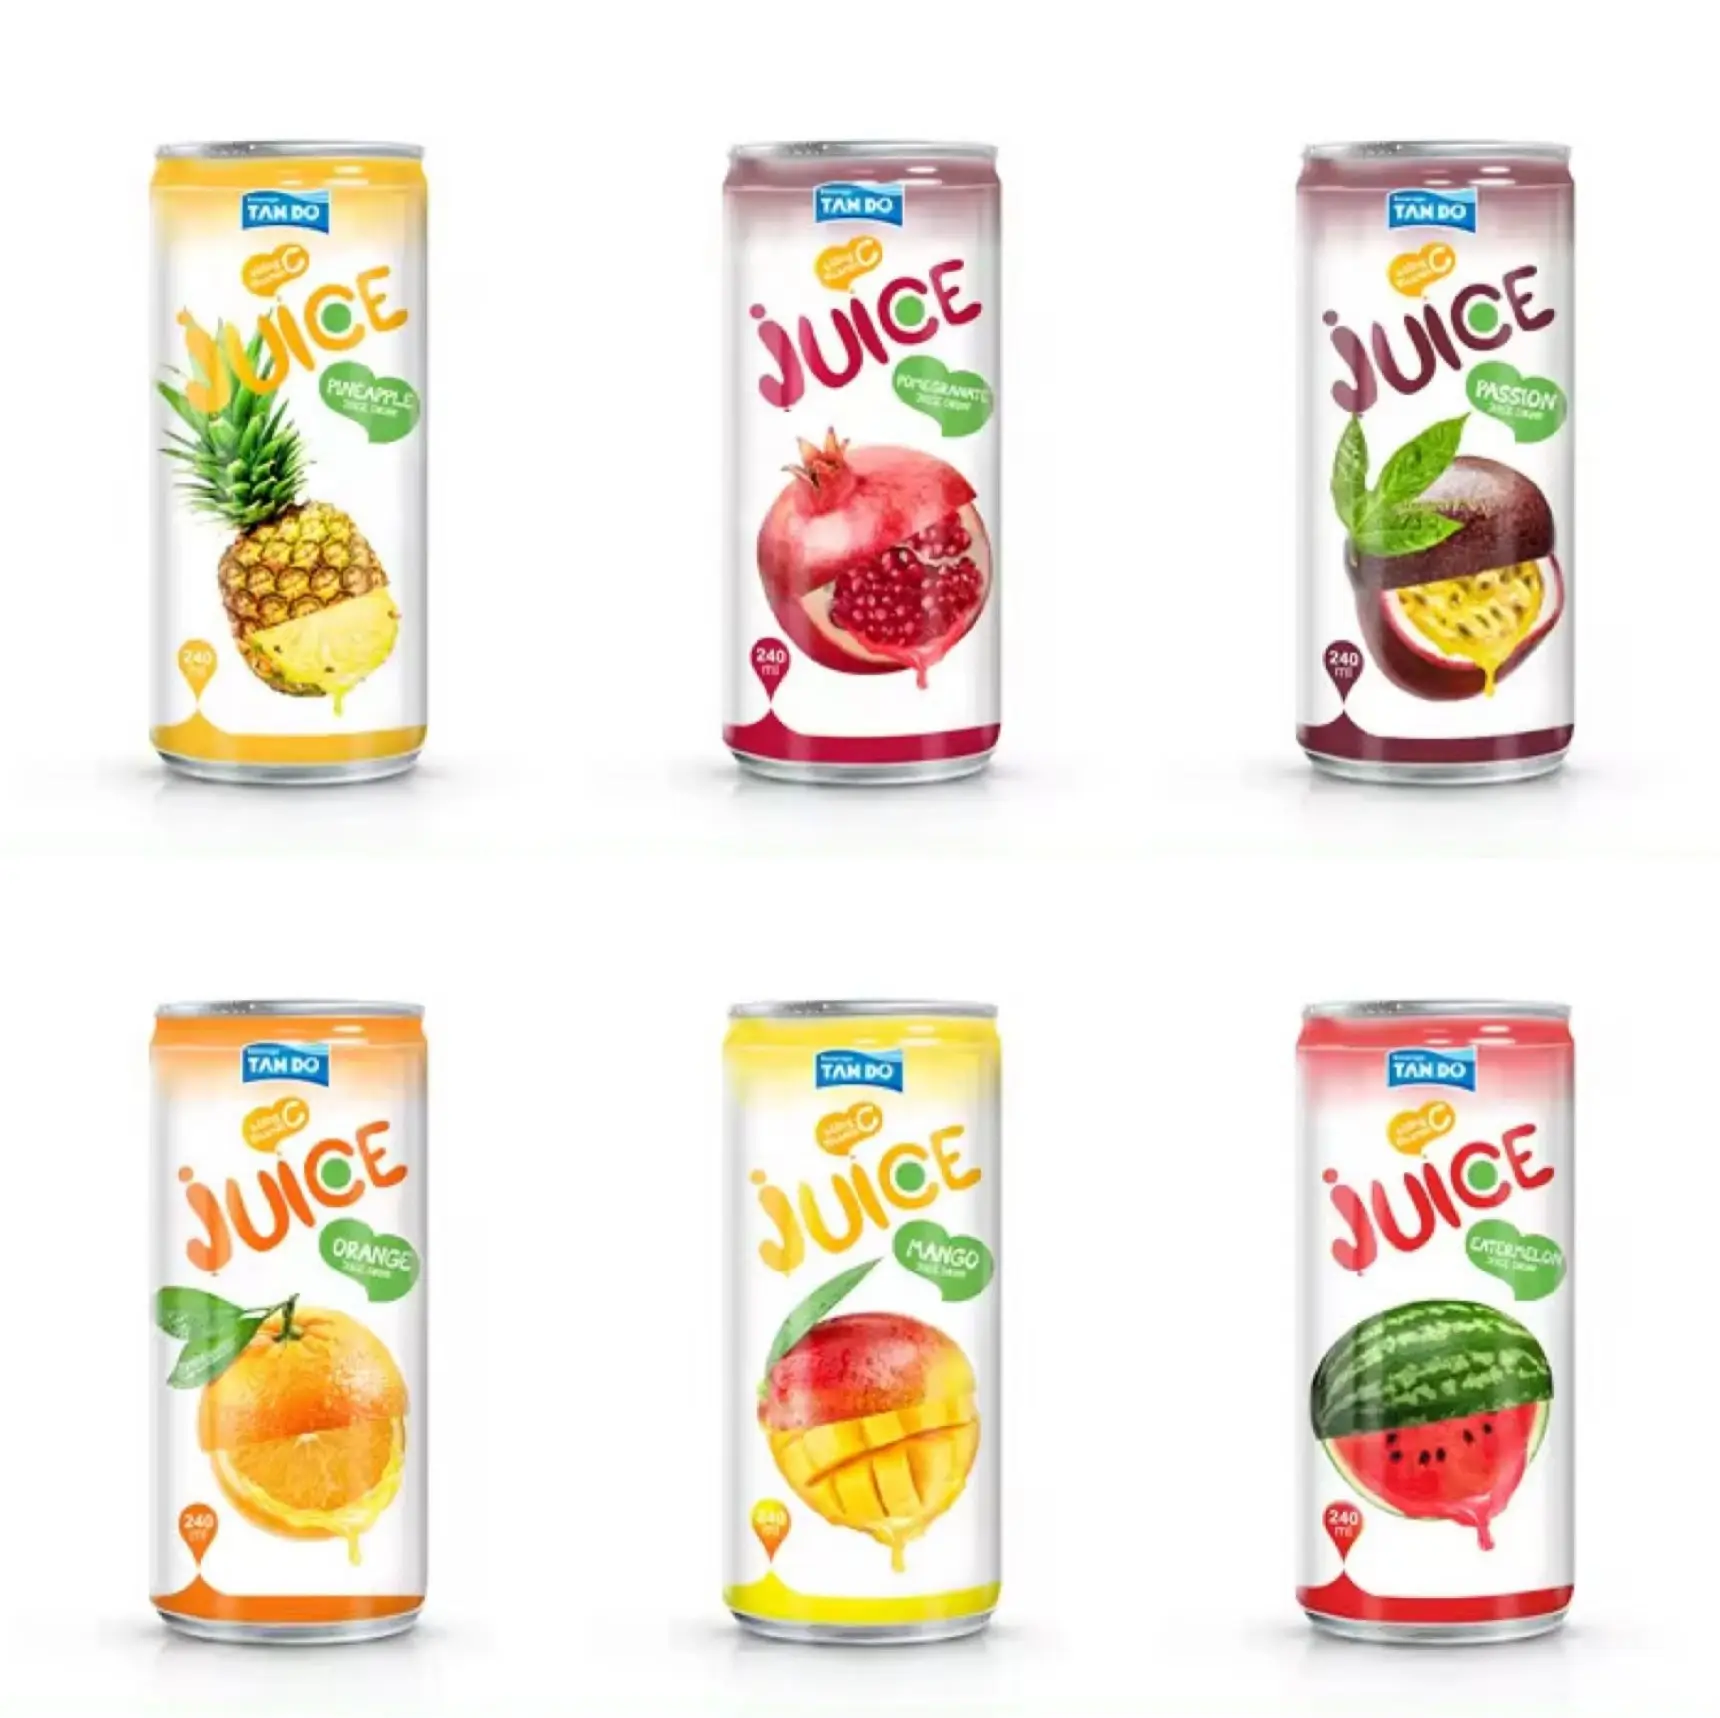 Großhandel/Eigenmarke tropisches reines Fruchtsaft Getränk 250 ml Dose aus Vietnam  Kostenlose Probe  Preiswerter  kein Zuckerzusatz